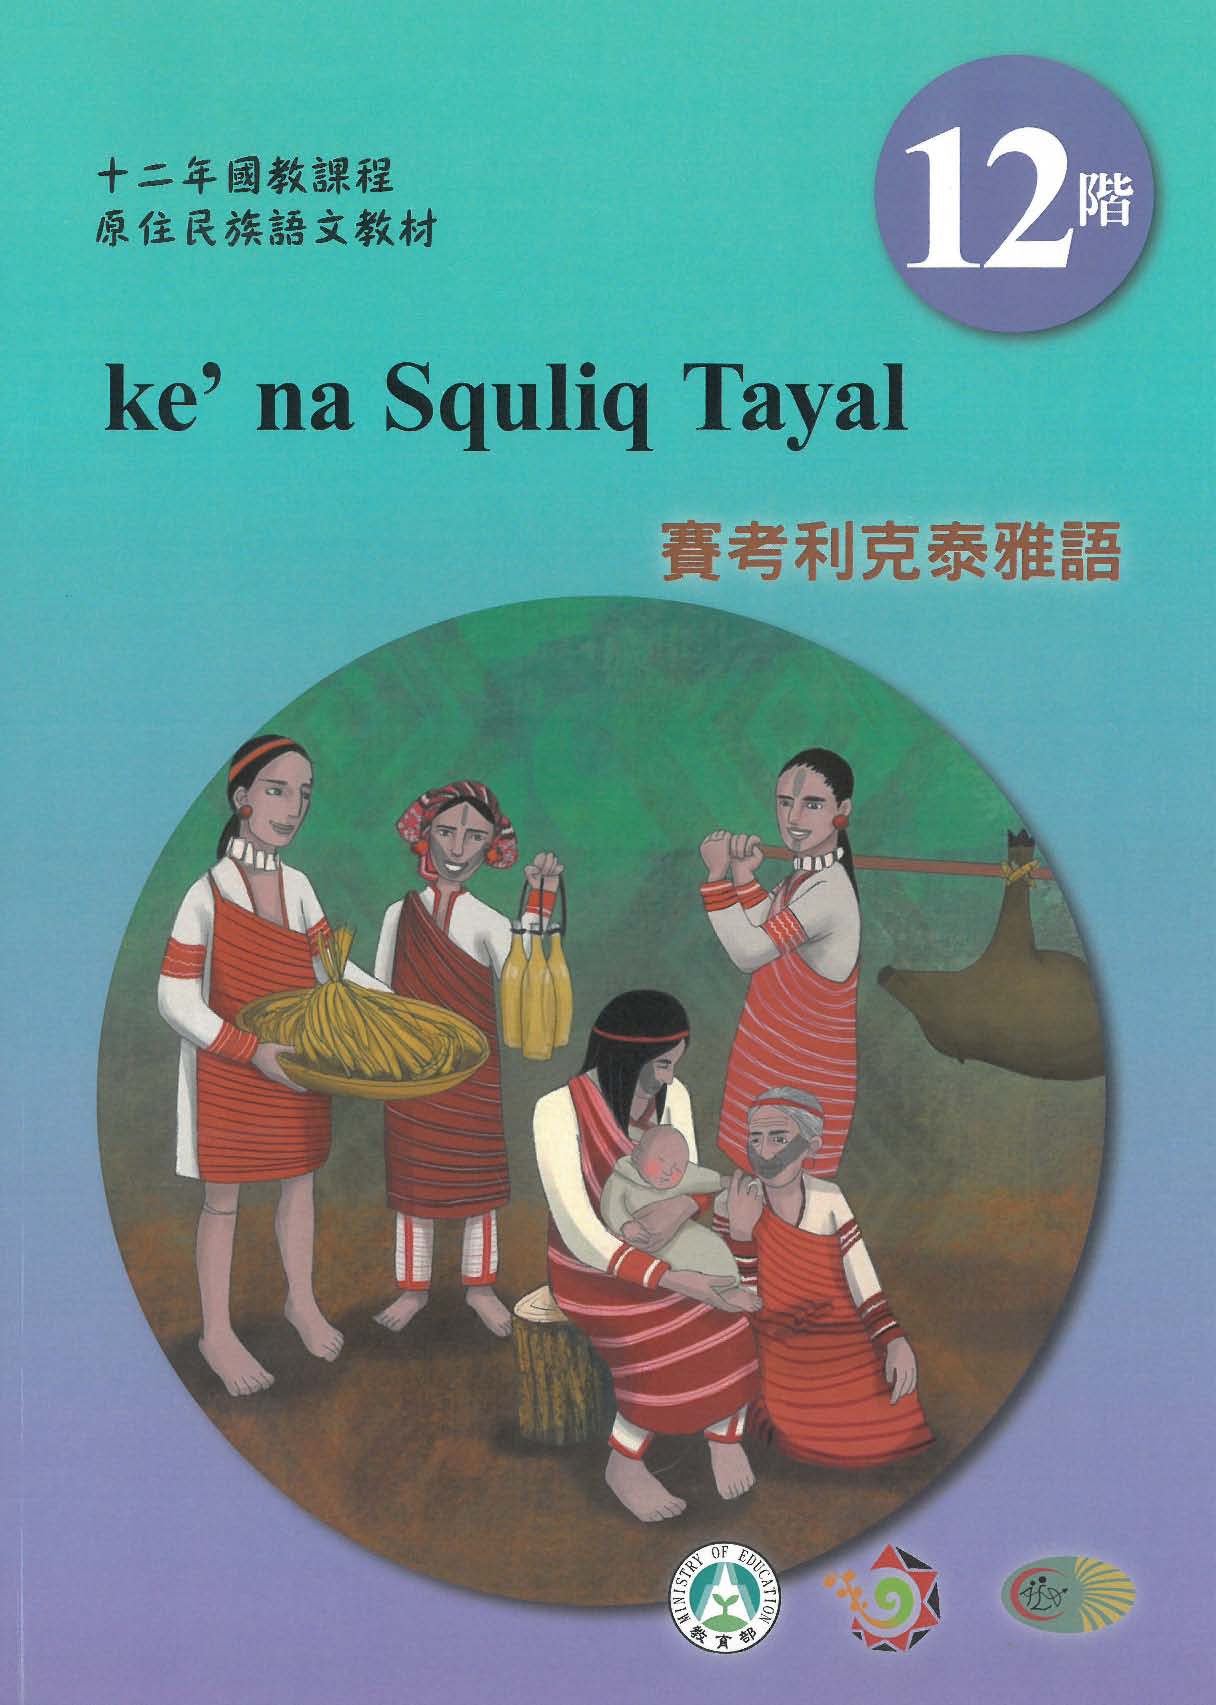 十二年國教原住民族語文教材 賽考利克泰雅語 學習手冊 第12階